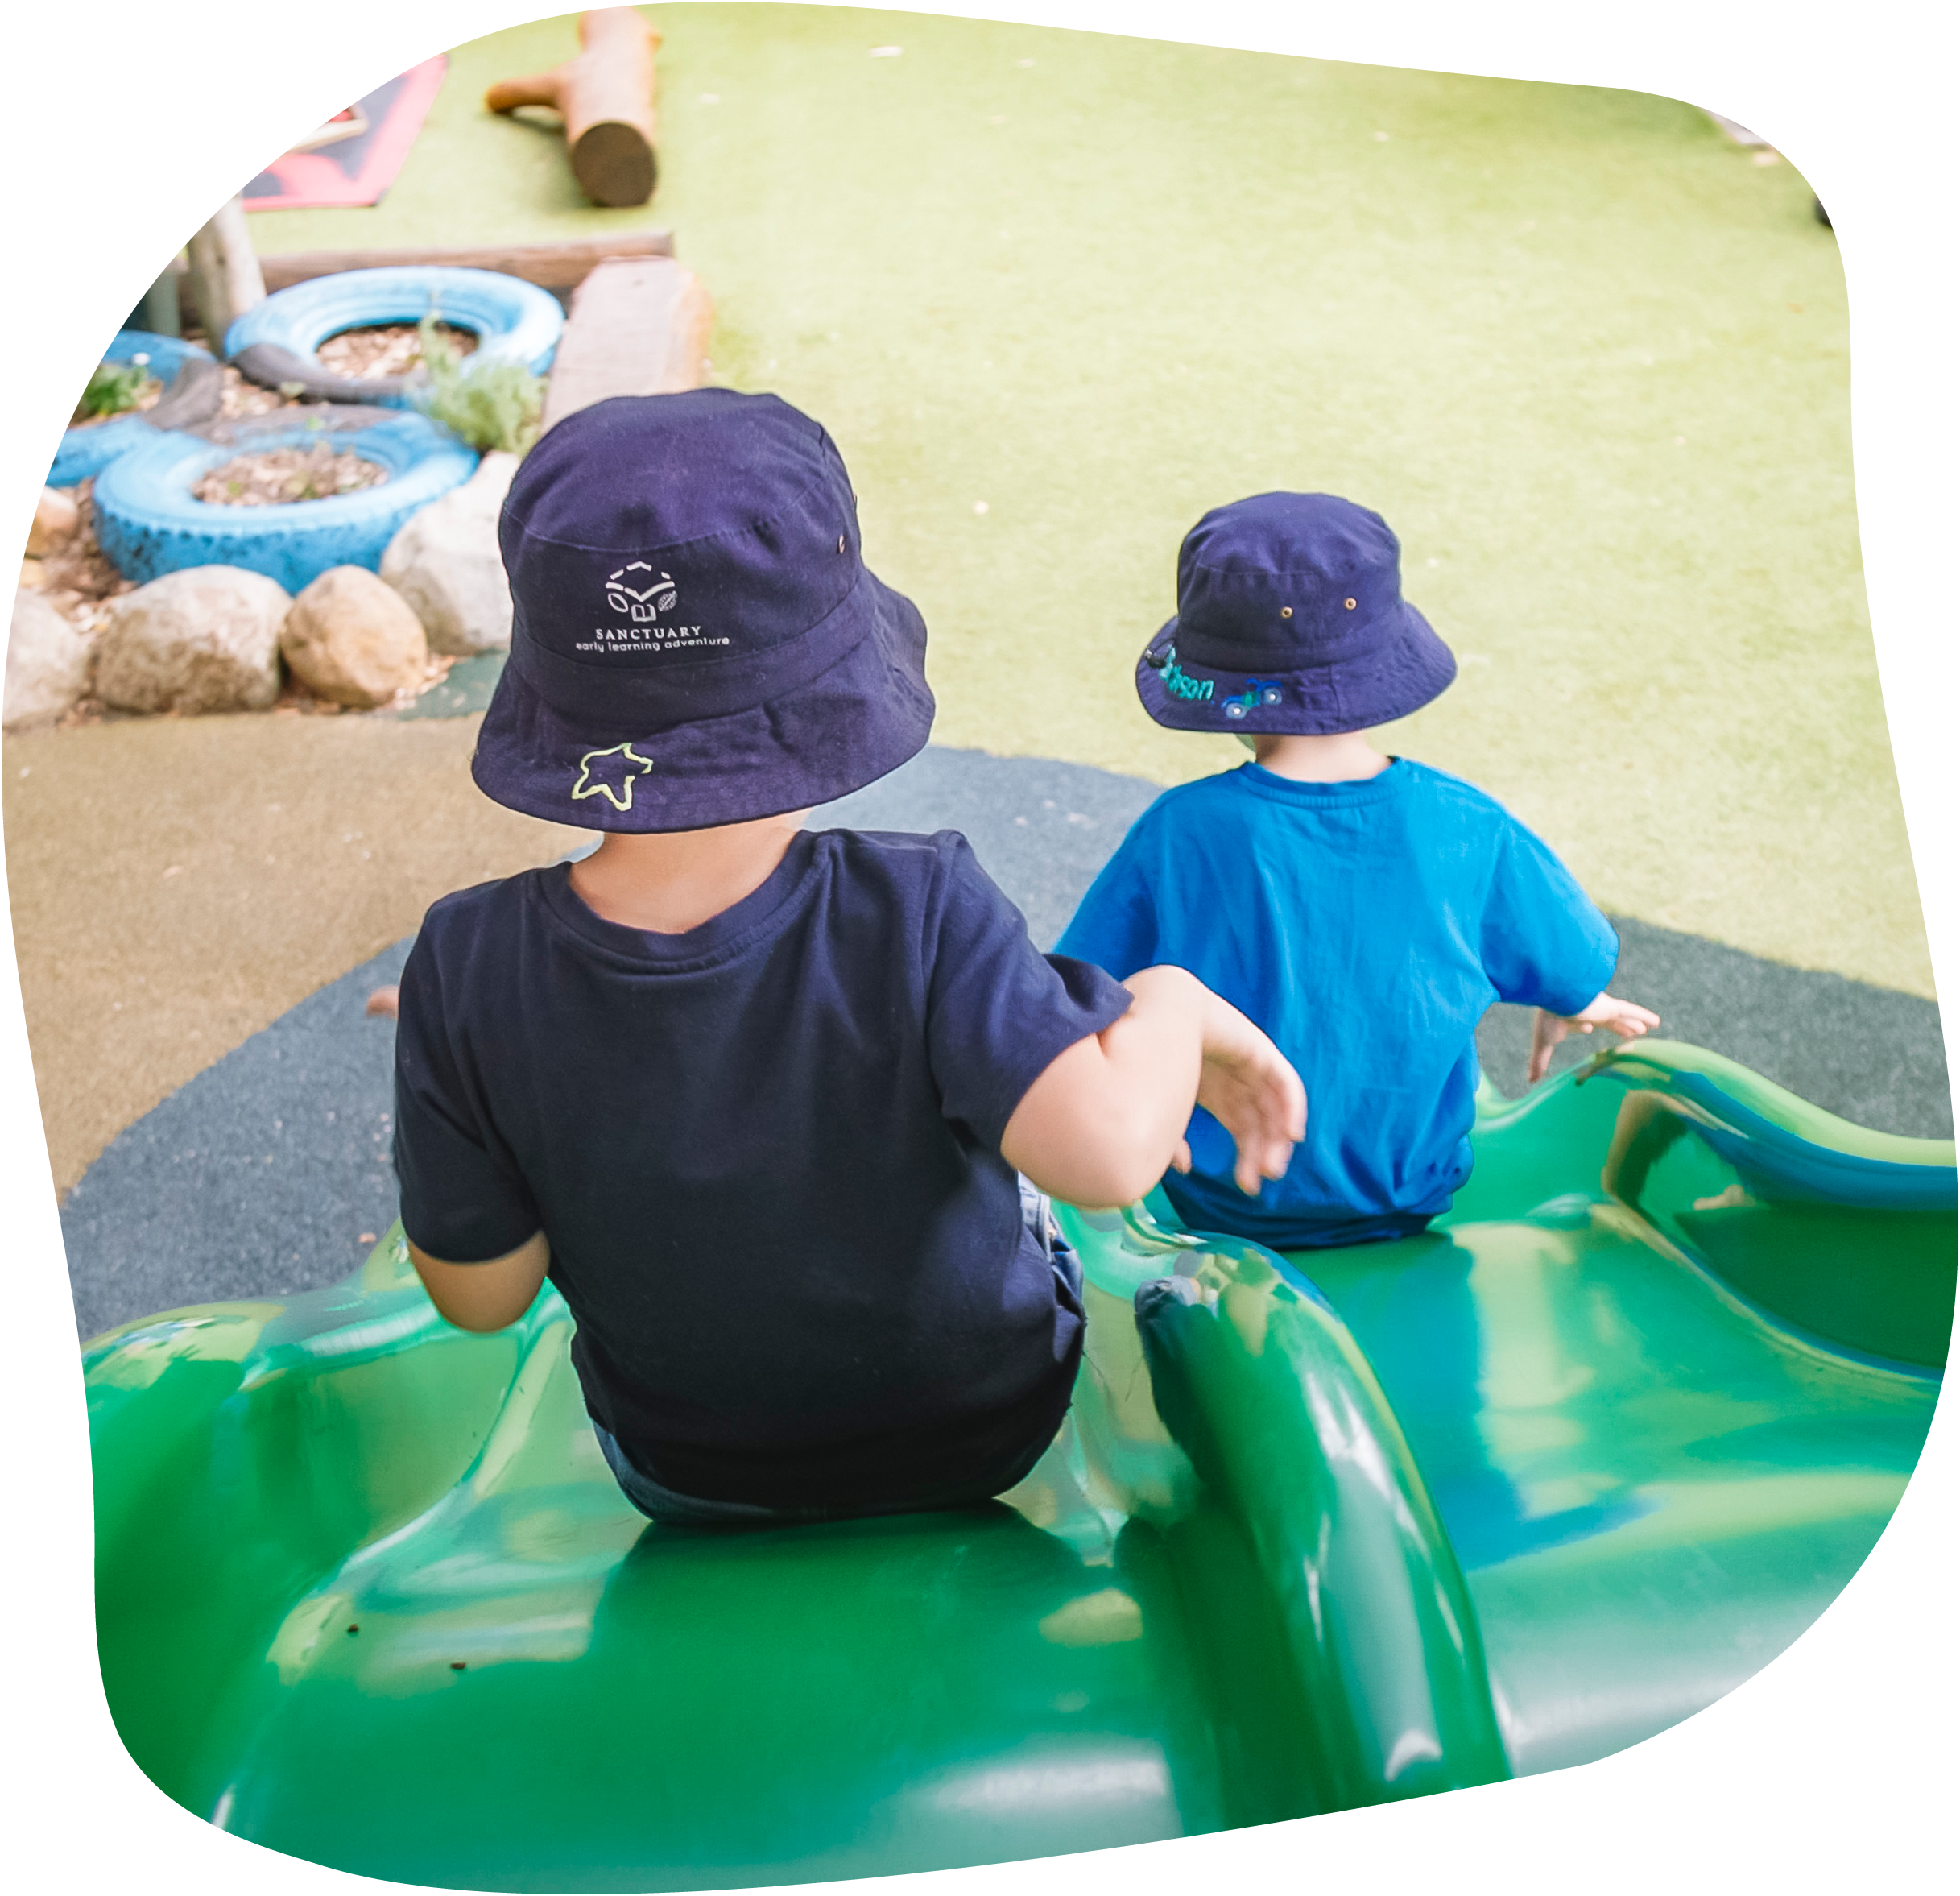 Two kids sliding down green play slide